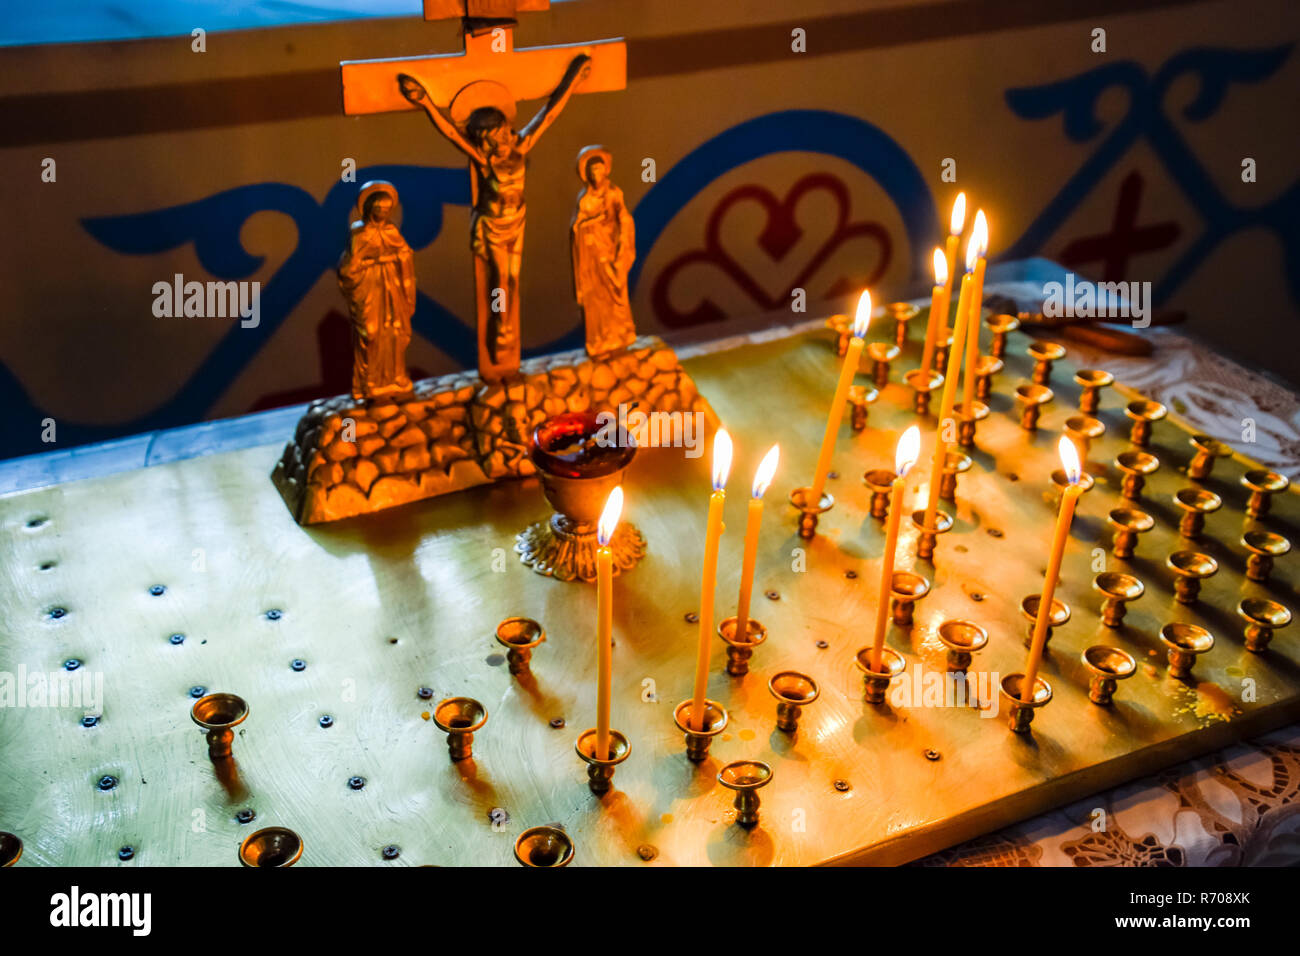 Chiesa ortodossa dall'interno. La masterizzazione di candele di cera davanti a icone e affreschi. La religione cristiana. Foto Stock